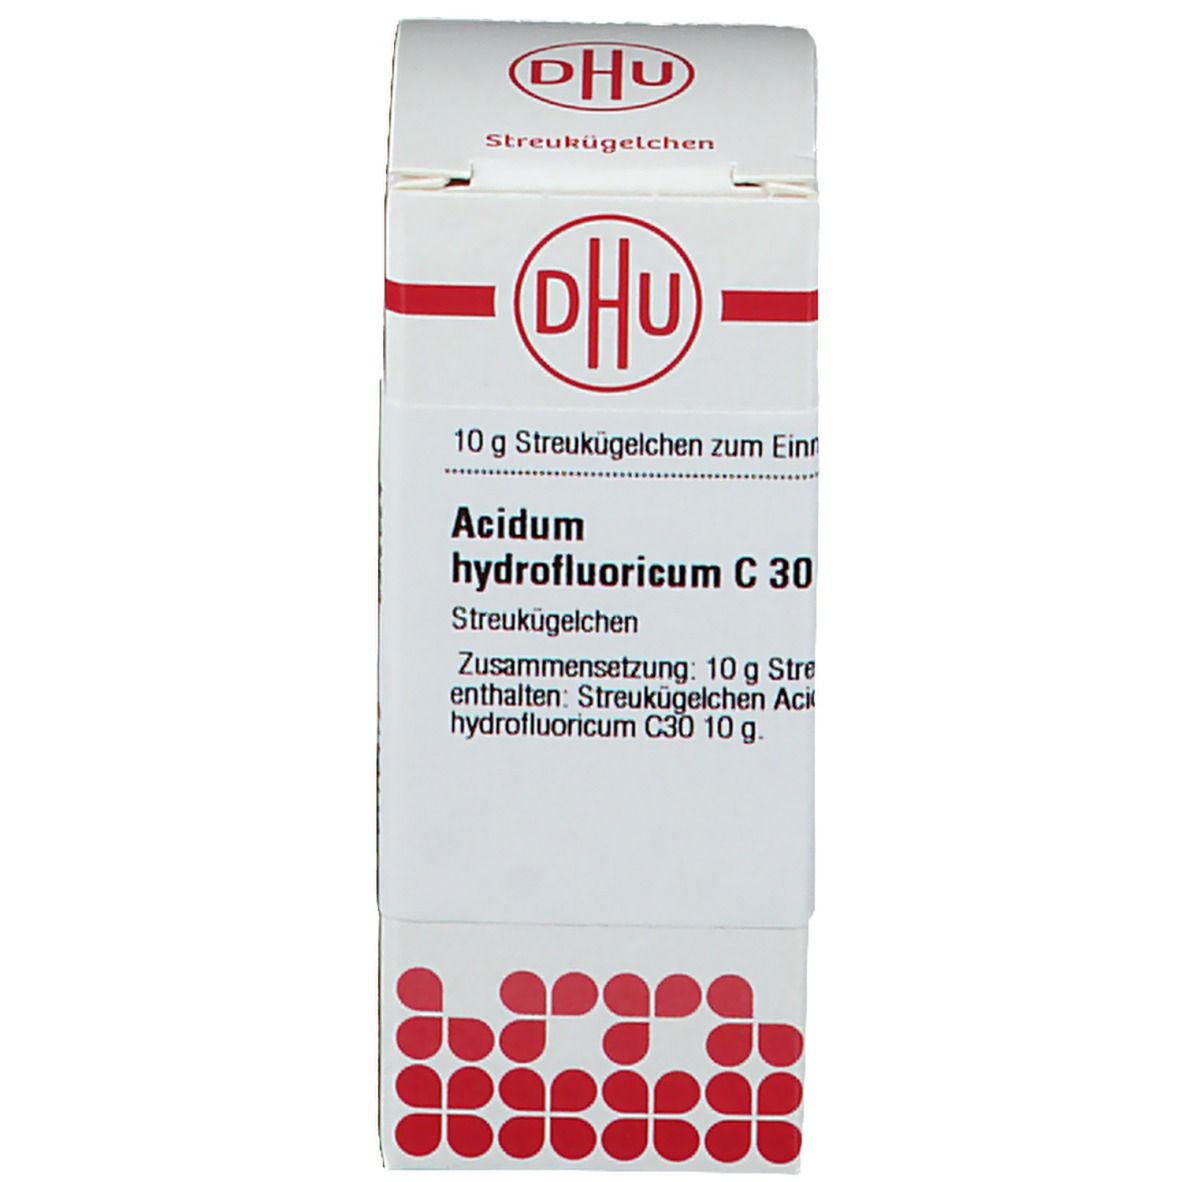 DHU acidum Hydrofluoricum C30